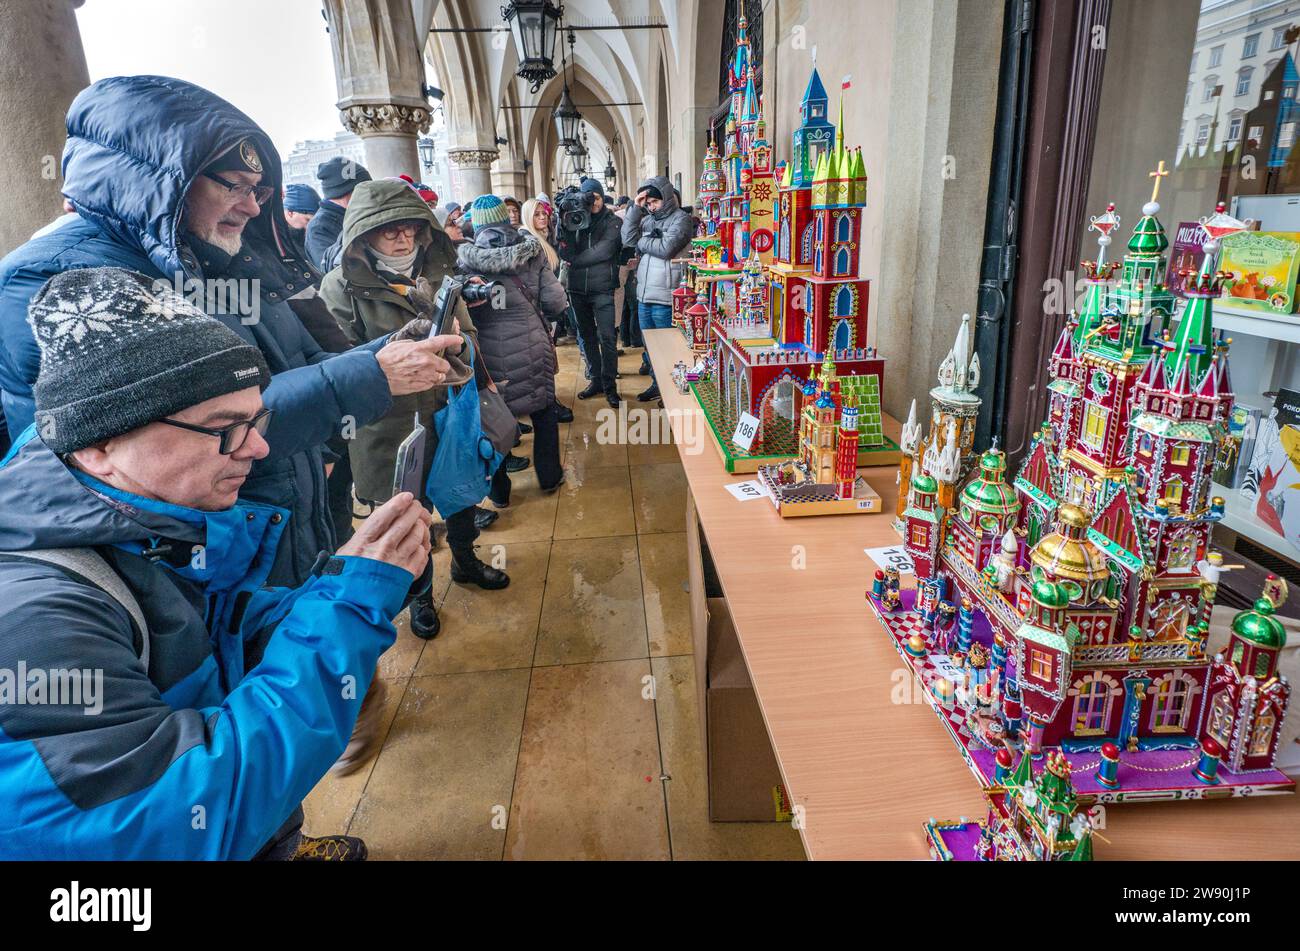 Personas que toman fotos de Szopki (Belén de Navidad) en la apertura del concurso anual en diciembre, evento incluido en la lista del Patrimonio Cultural de la UNESCO, en las salas de juegos de Sukiennice (Salón de telas), Plaza del Mercado Principal, Kraków, Polonia Foto de stock